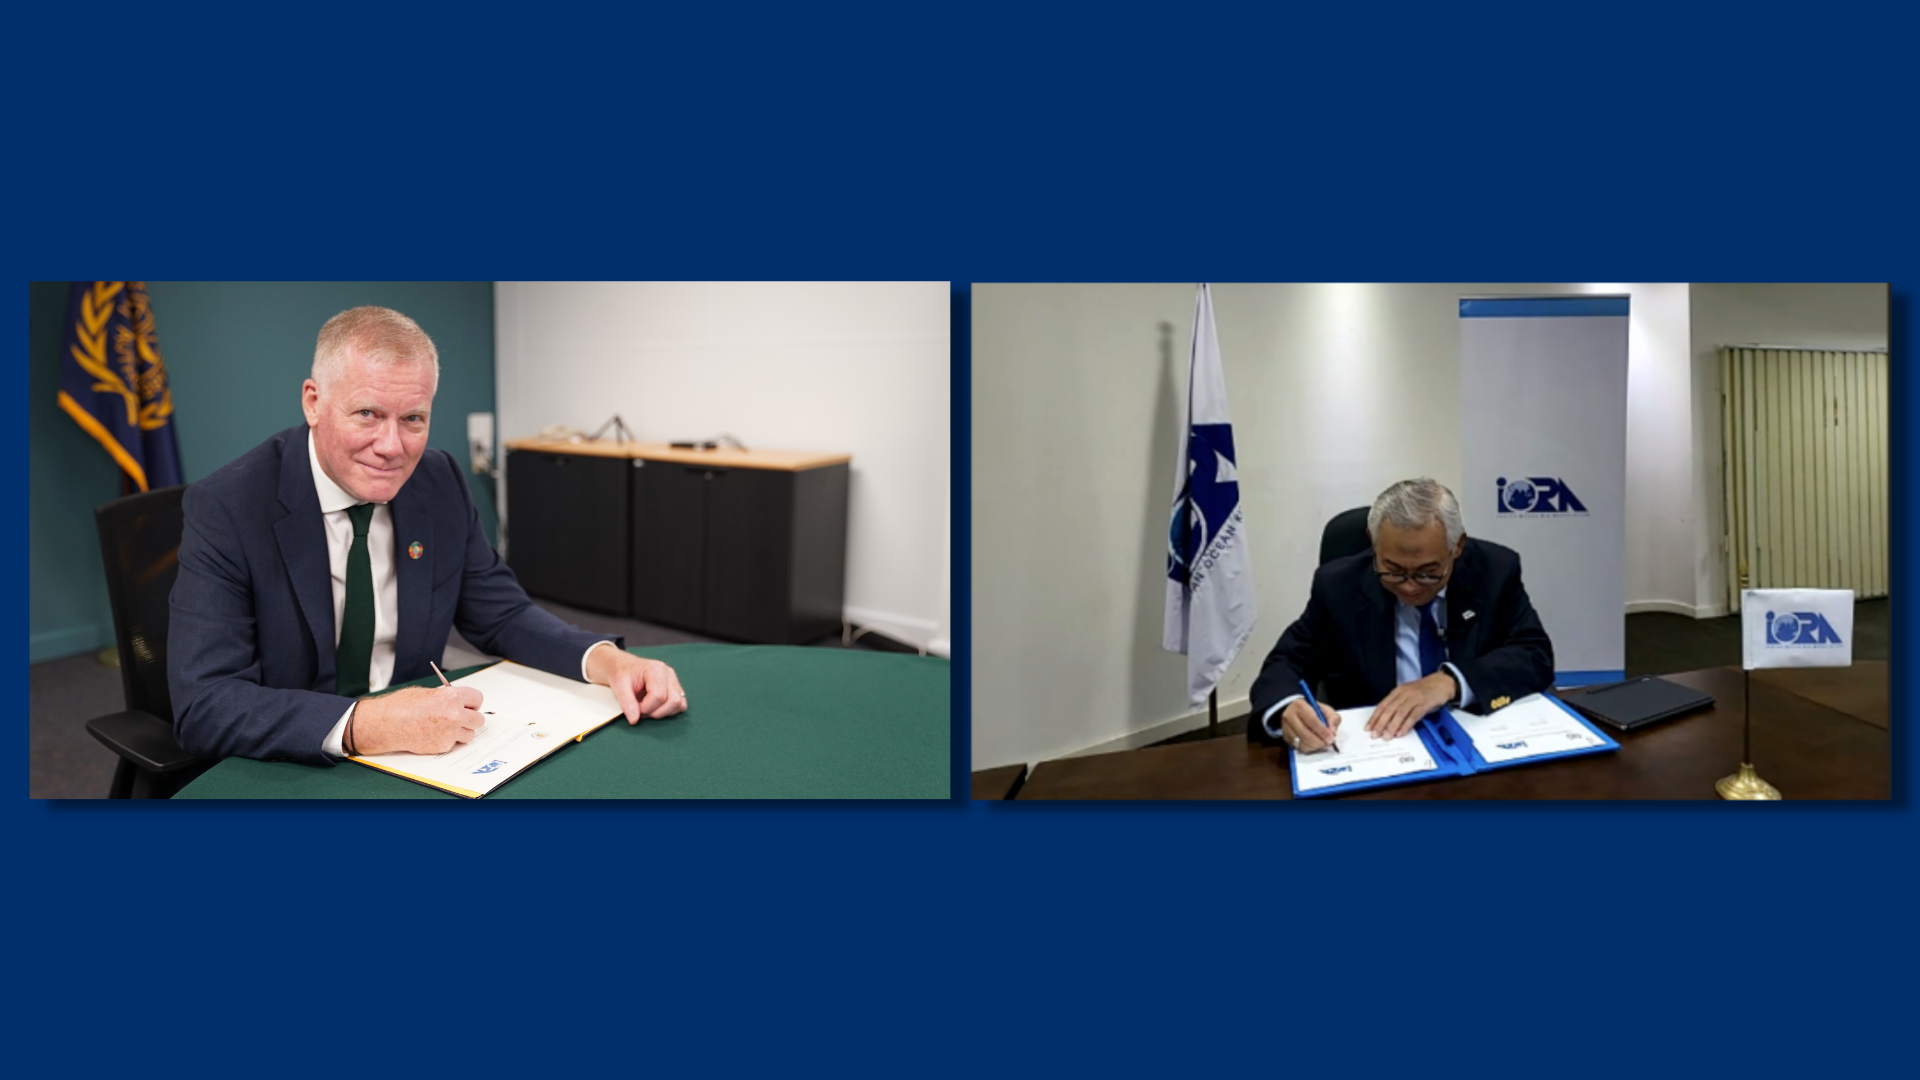 L’AIFM et l’IORA signent un protocole d’accord pour étendre leur collaboration dans la recherche scientifique marine et l’exploration des fonds marins en appui à l’économie bleue de la région de l’océan Indien